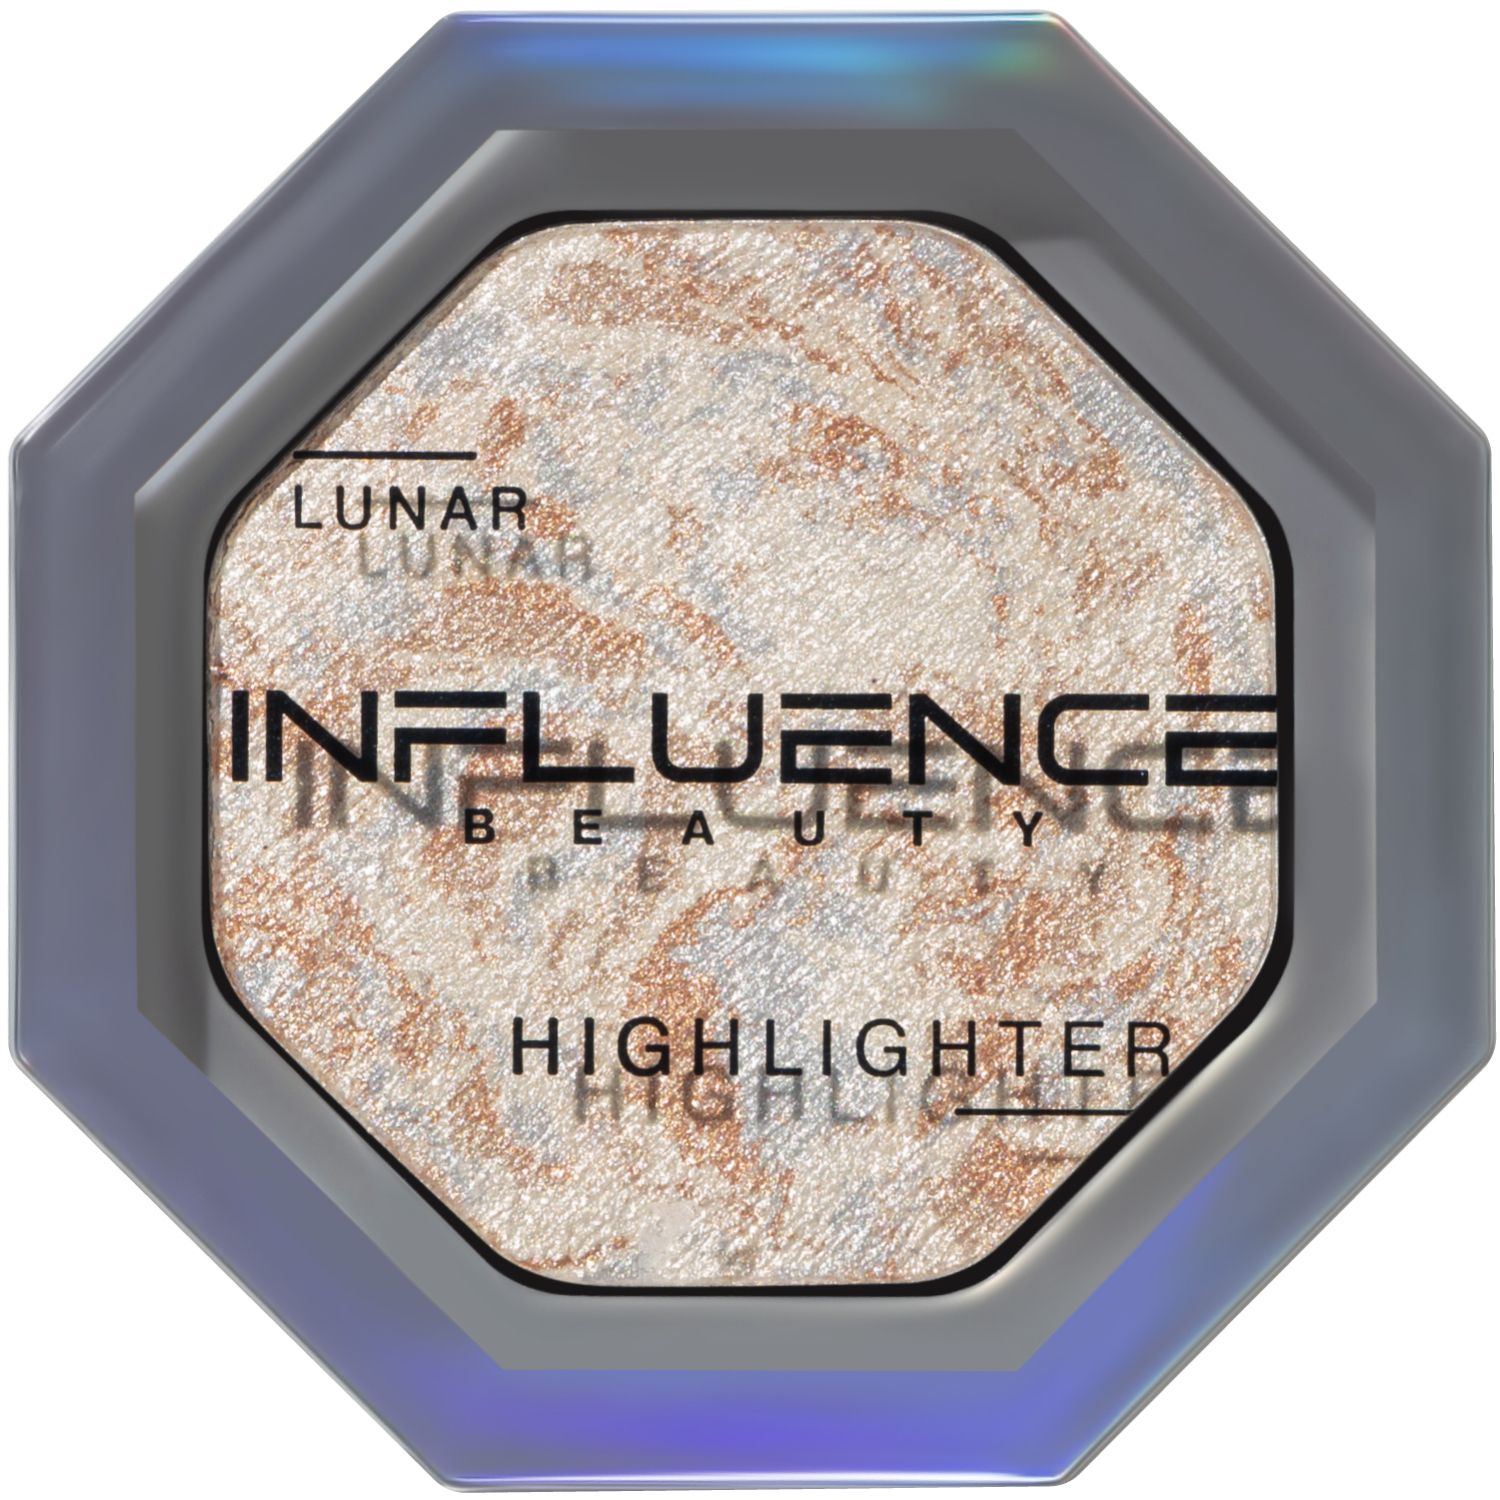 Хайлайтер Influence Beauty LUNAR , эффект деликатного сияния, серебряный, 4,8 г influence beauty палетка теней neuro artist